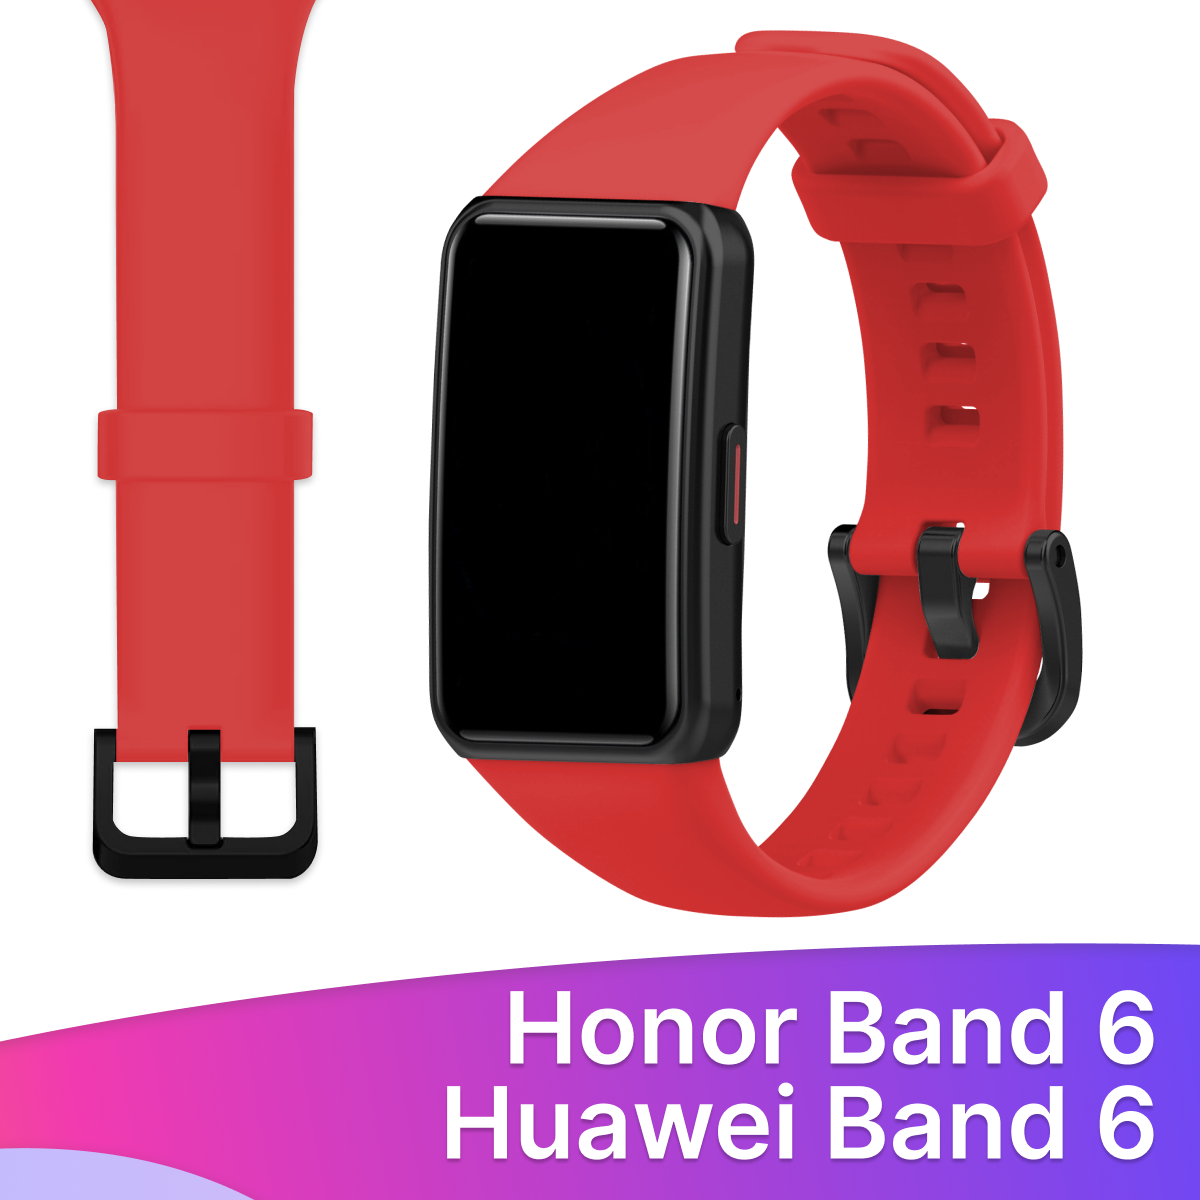 Силиконовый ремешок для Honor Band 6 и Huawei Band 6 / Сменный браслет для умных смарт часов / Фитнес трекера Хонор и Хуавей Бэнд 6, Красный